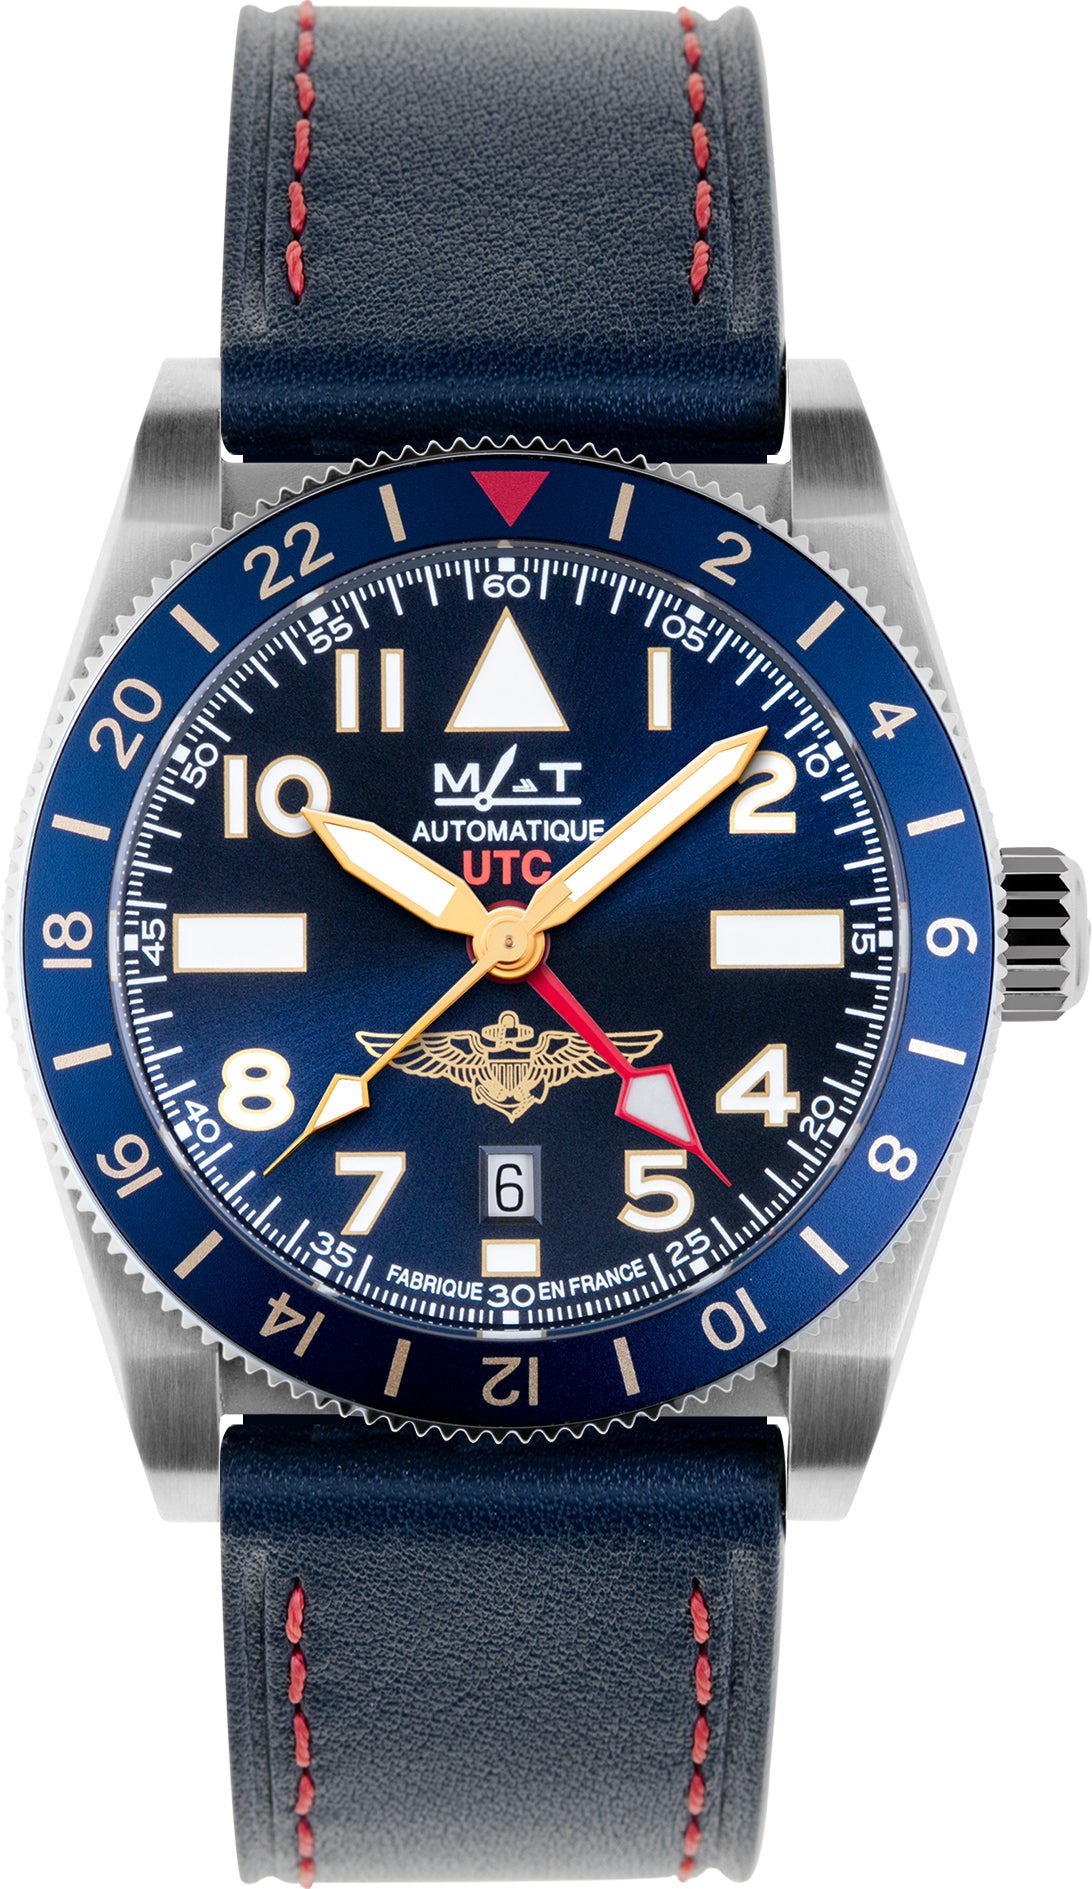 Mat Watch Naval Aviator Utc